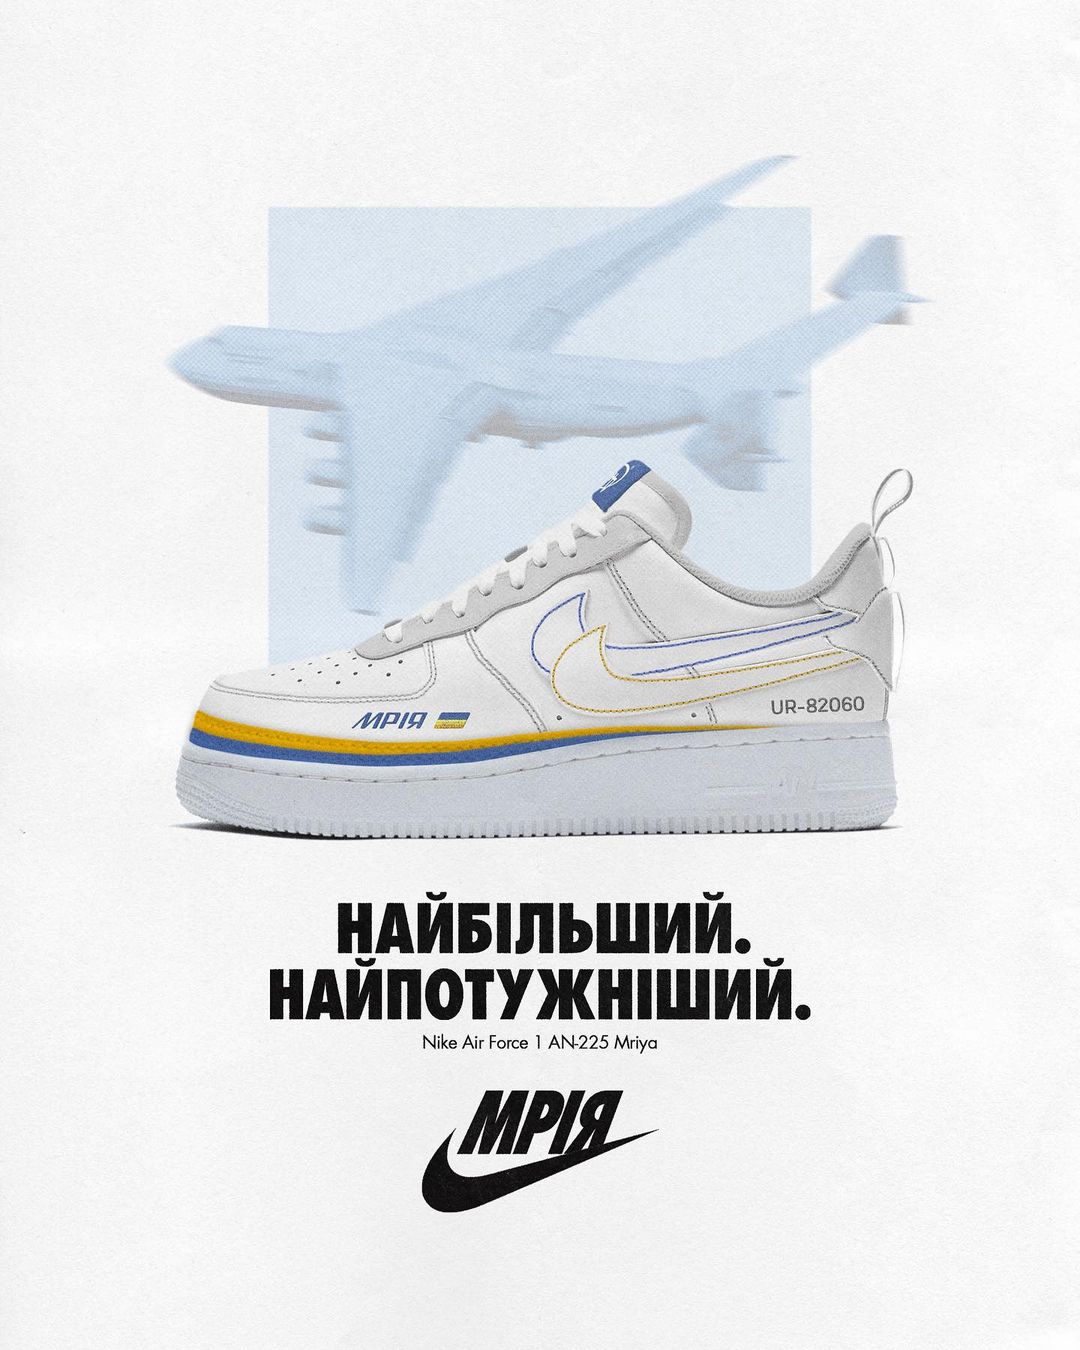 Український дизайнер вигадав кросівки Nike з літаком 